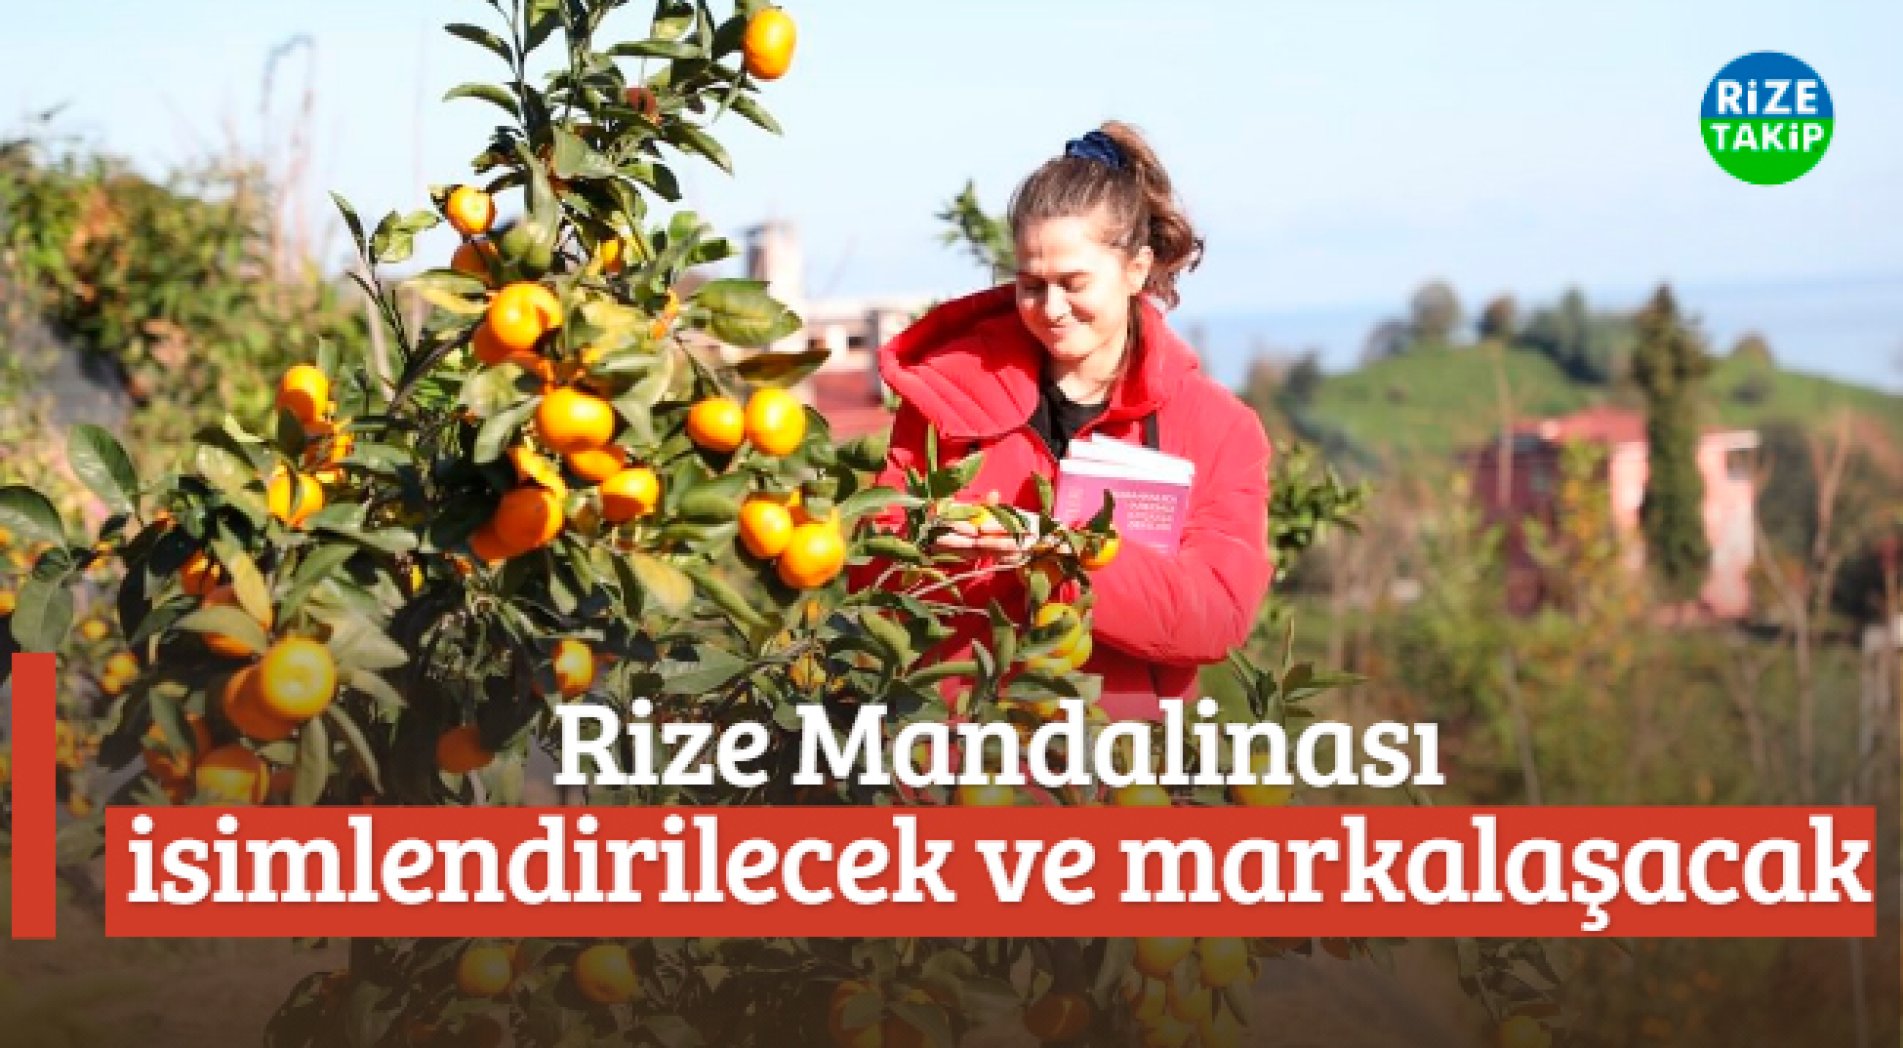 RTEÜ'nün 9 Farklı Mandalina Ürettiği Bahçede Hasat Şenliği Düzenlendi